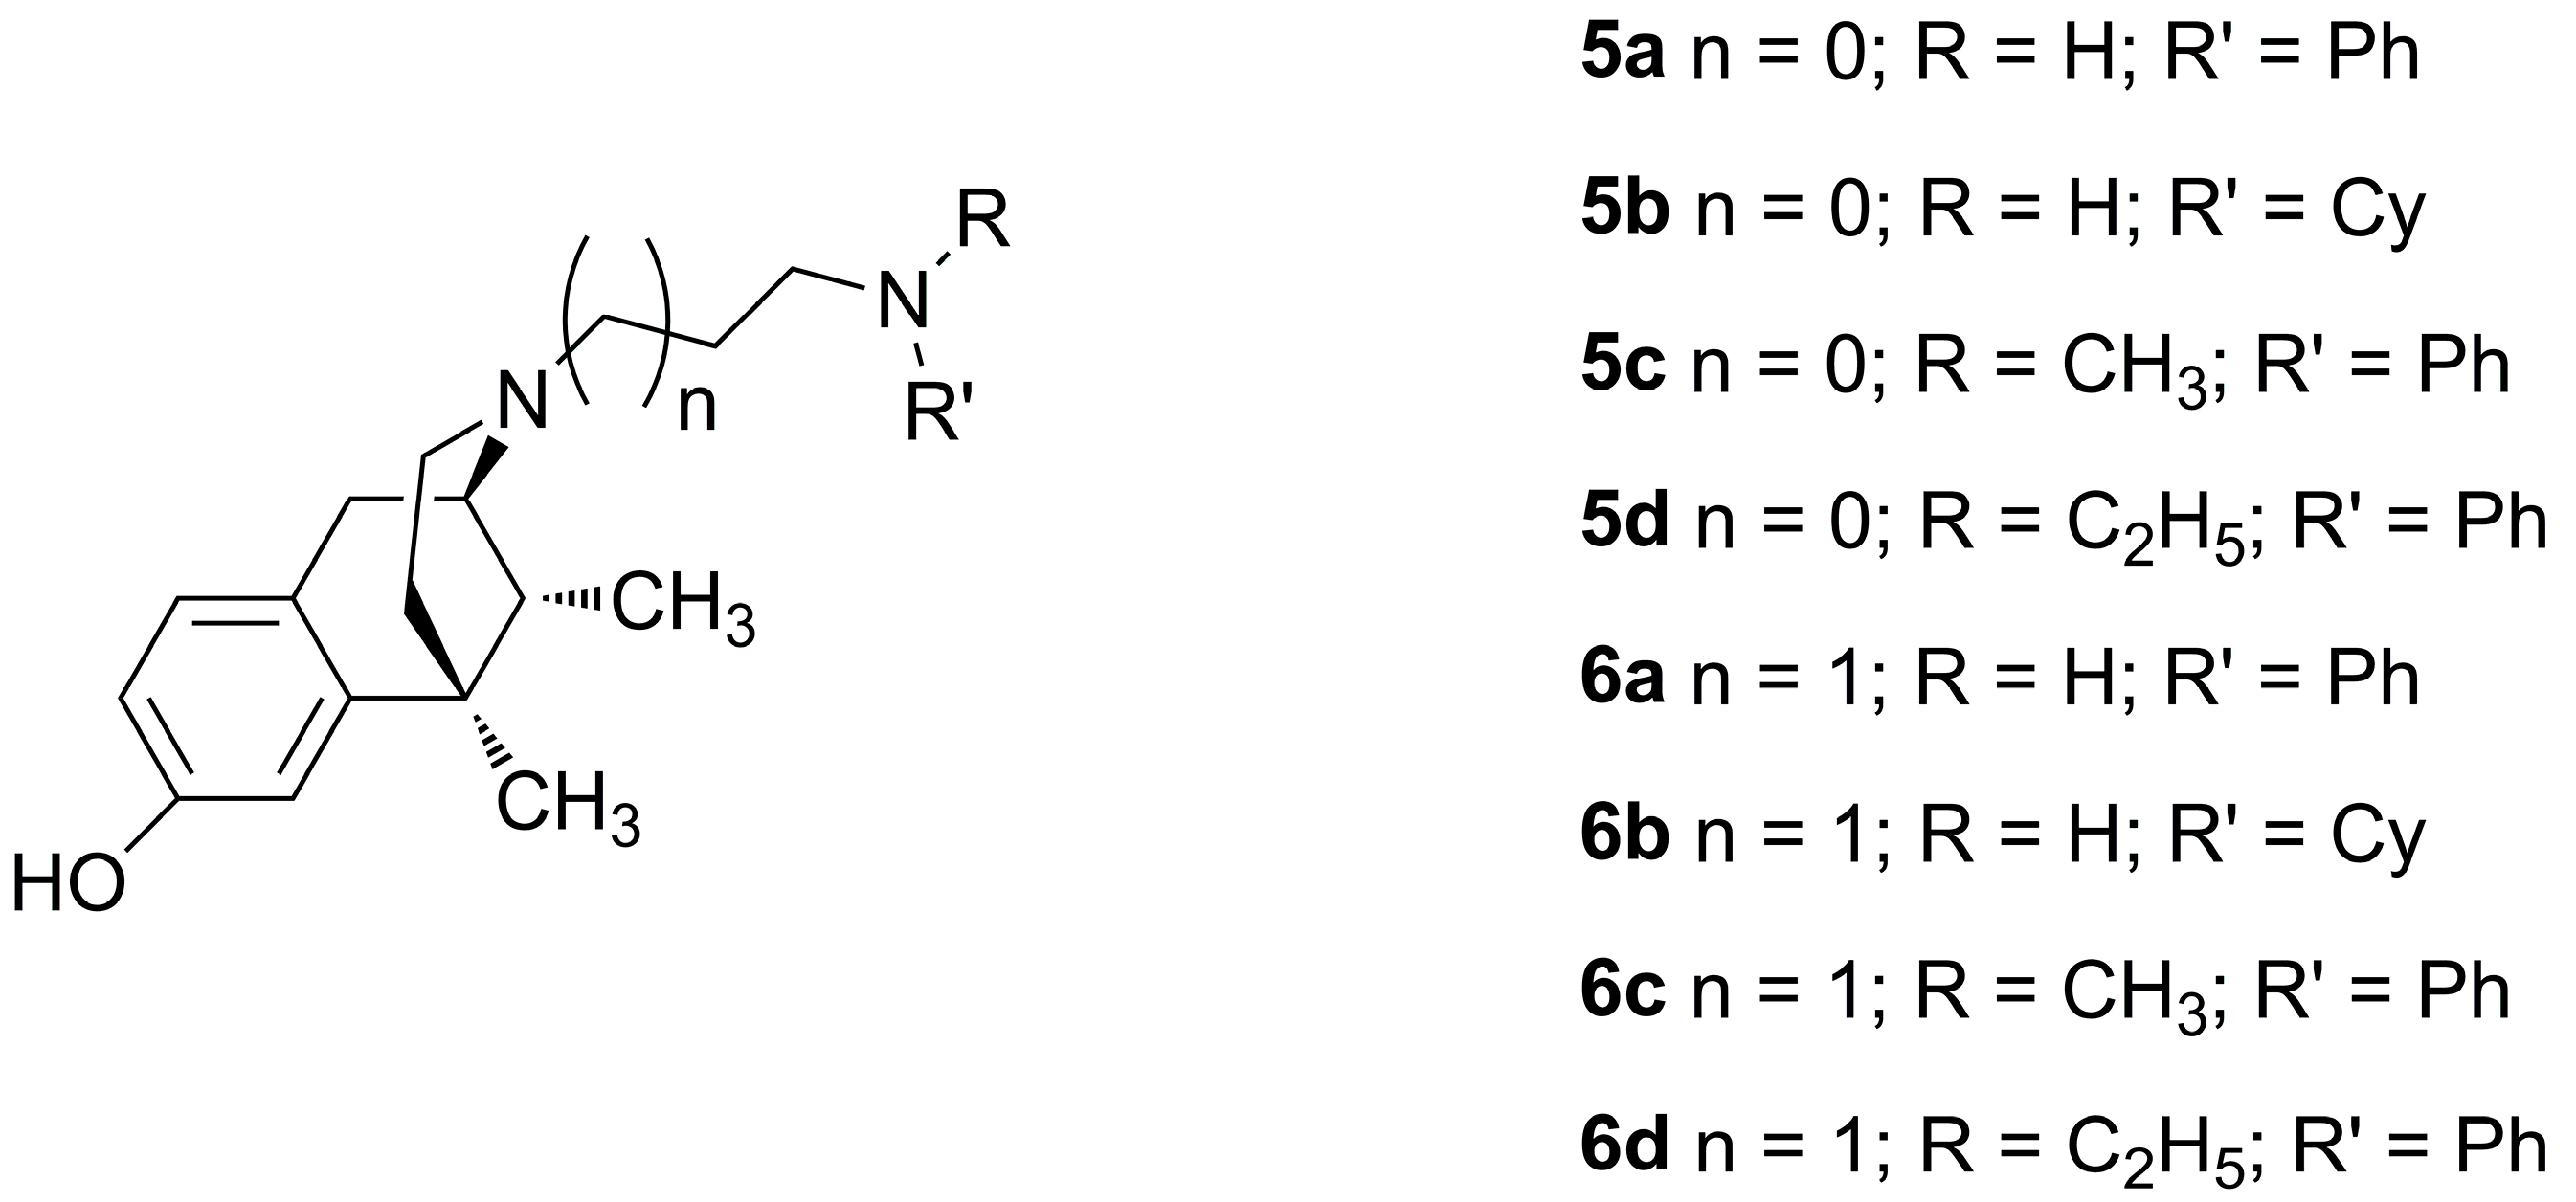 molecules-23-00677-g002.png